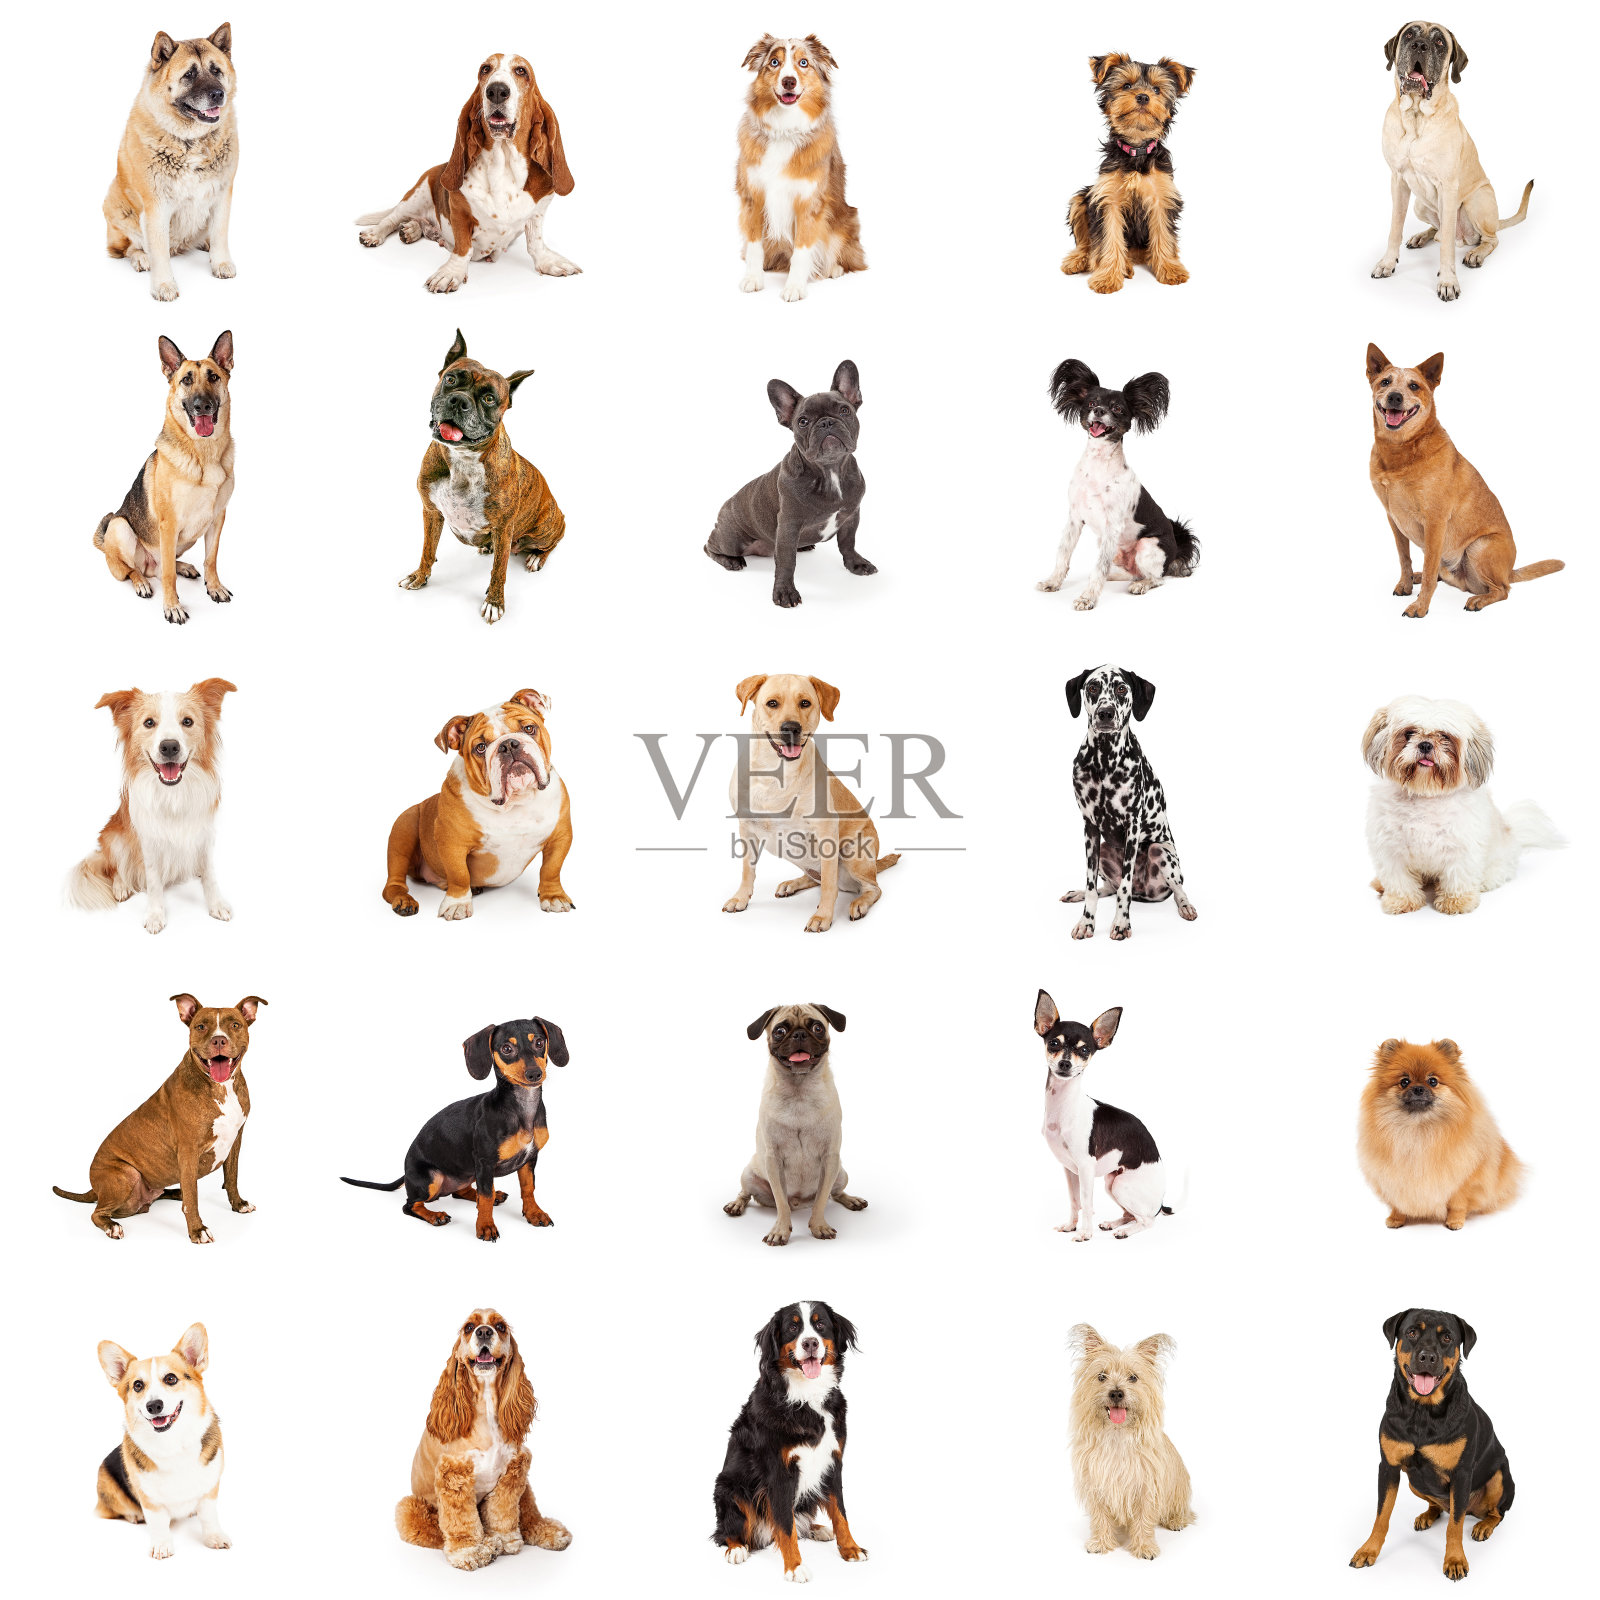 大量的普通品种的狗照片摄影图片